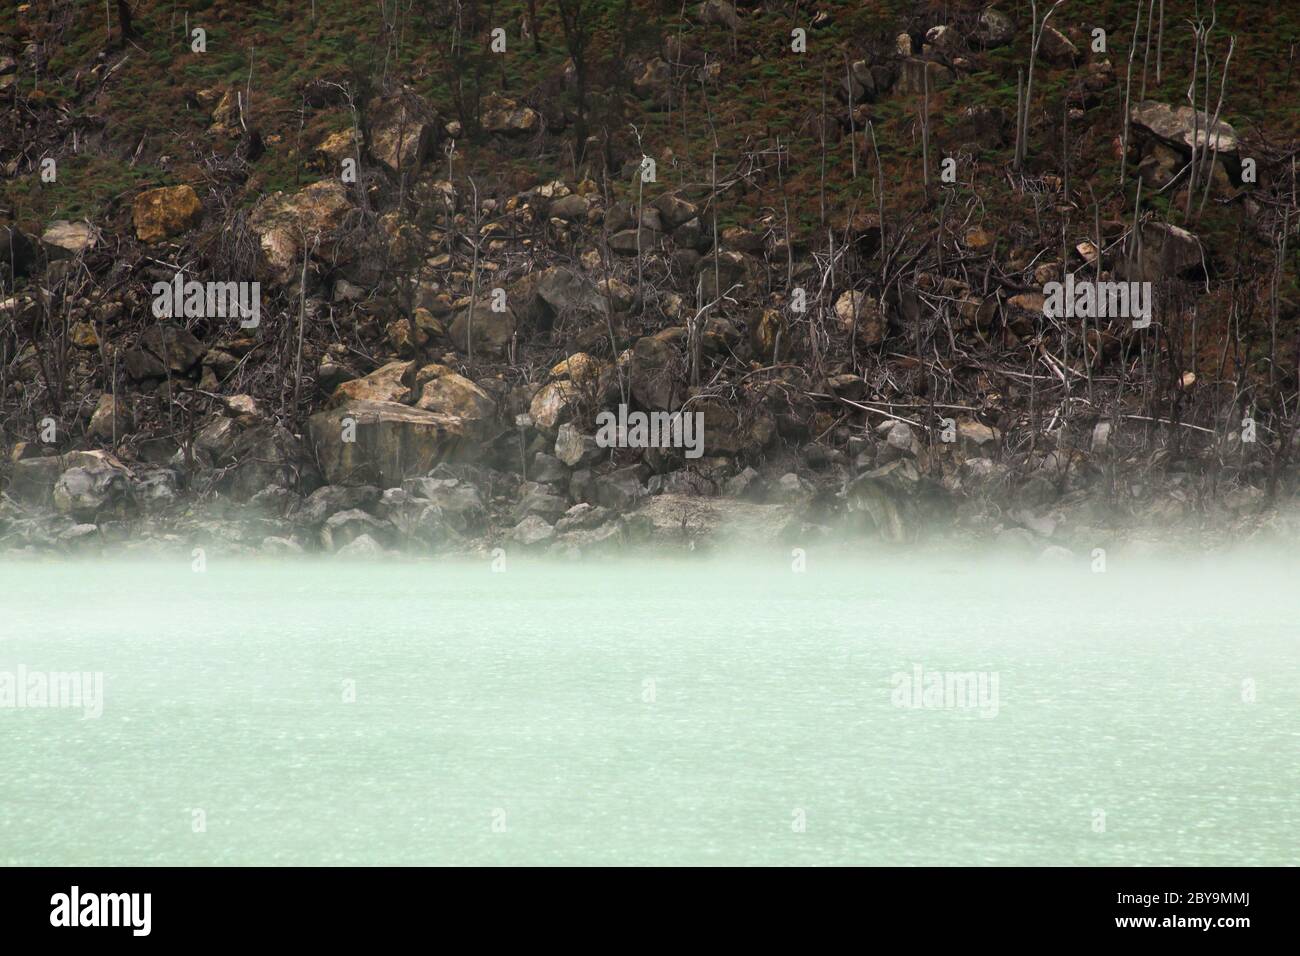 La nebbia evapora sul lago del vulcano Kawah Putih, vicino a Bandung, Indonesia. Si tratta di un lago solforico situato nel cratere vulcanico della zona montuosa di Ciwi Foto Stock